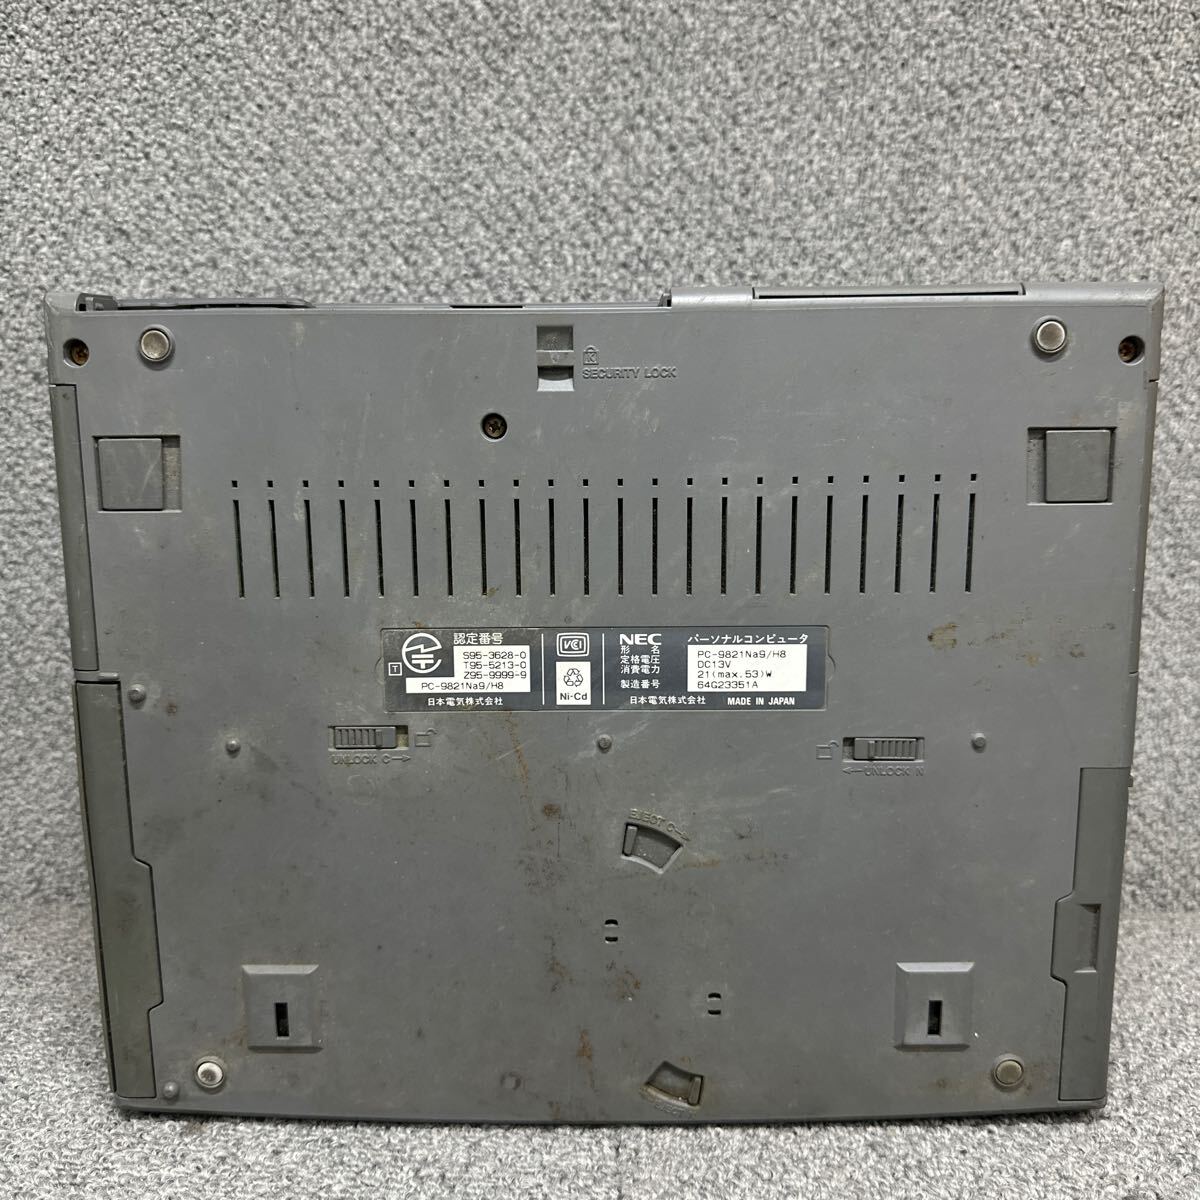 PCN98-1661 супер-скидка PC98 ноутбук NEC PC-9821Na9/H8 электризация только подтверждено Junk включение в покупку возможность 